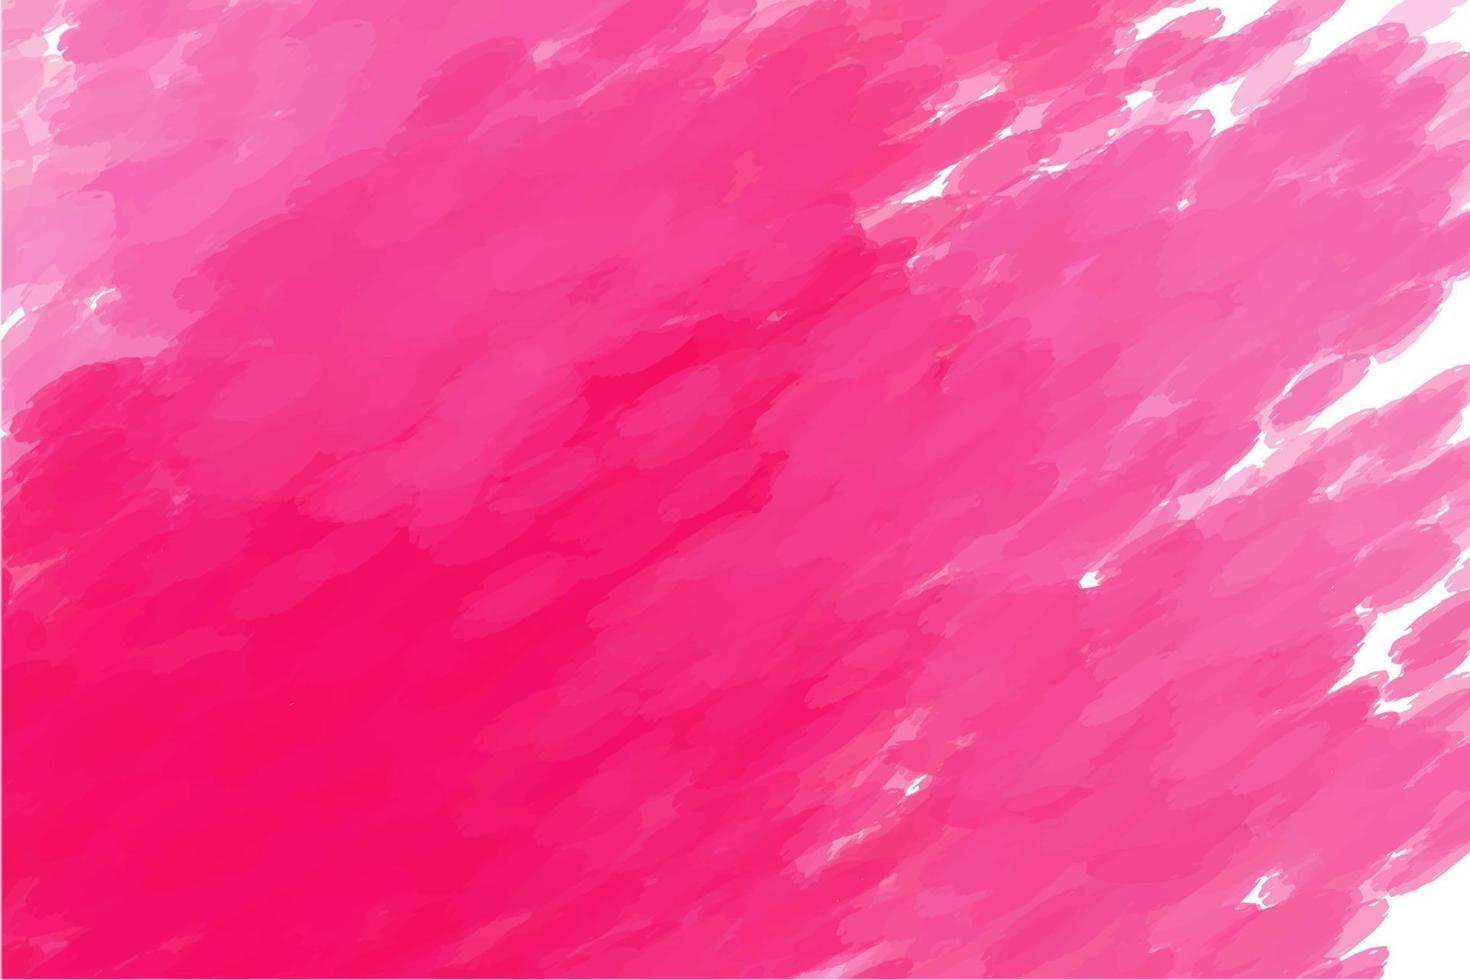 aquarellhintergrund, saftige farben mit ausgeprägten strichen auf einer weißen leinwand, rosa farbe vektor